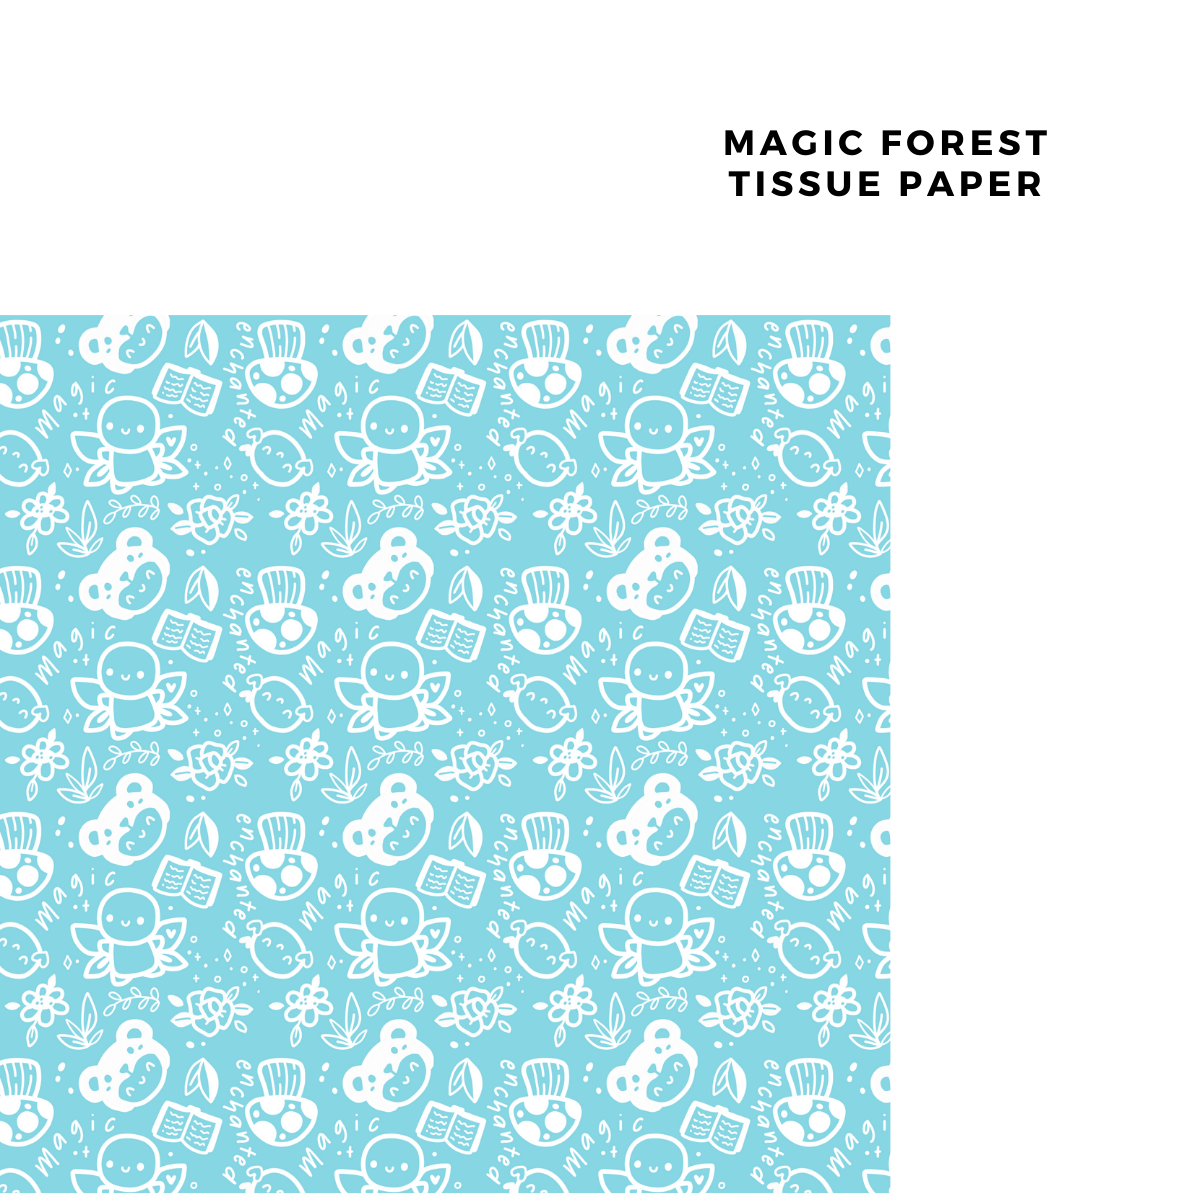 Decorative Tissue Paper